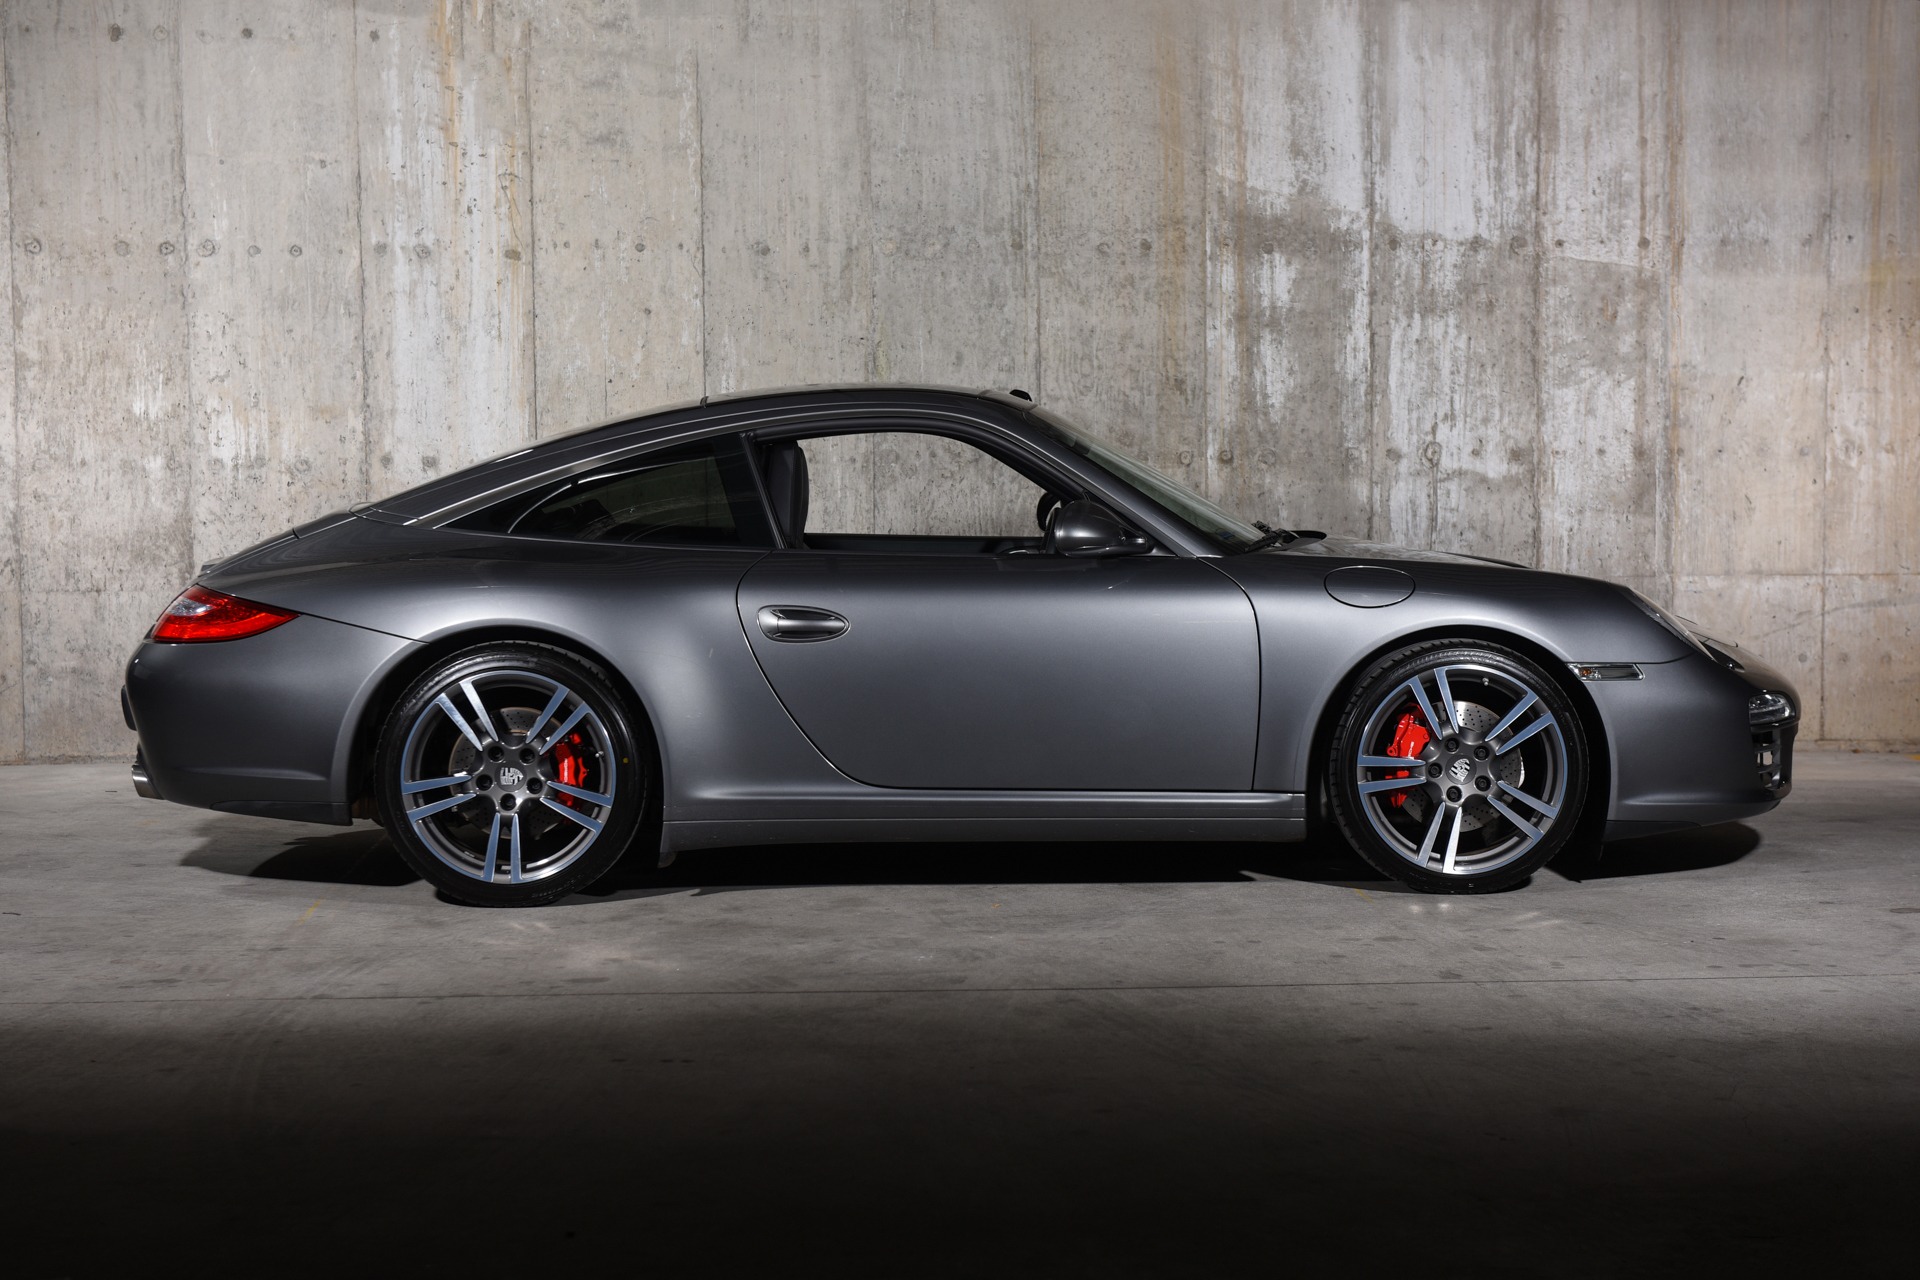 Stock　#1033　(Sold)　Targa　Porsche　Used　Sale　LLC　Motor　911　For　Cars　Ryan　Friedman　2012　4S